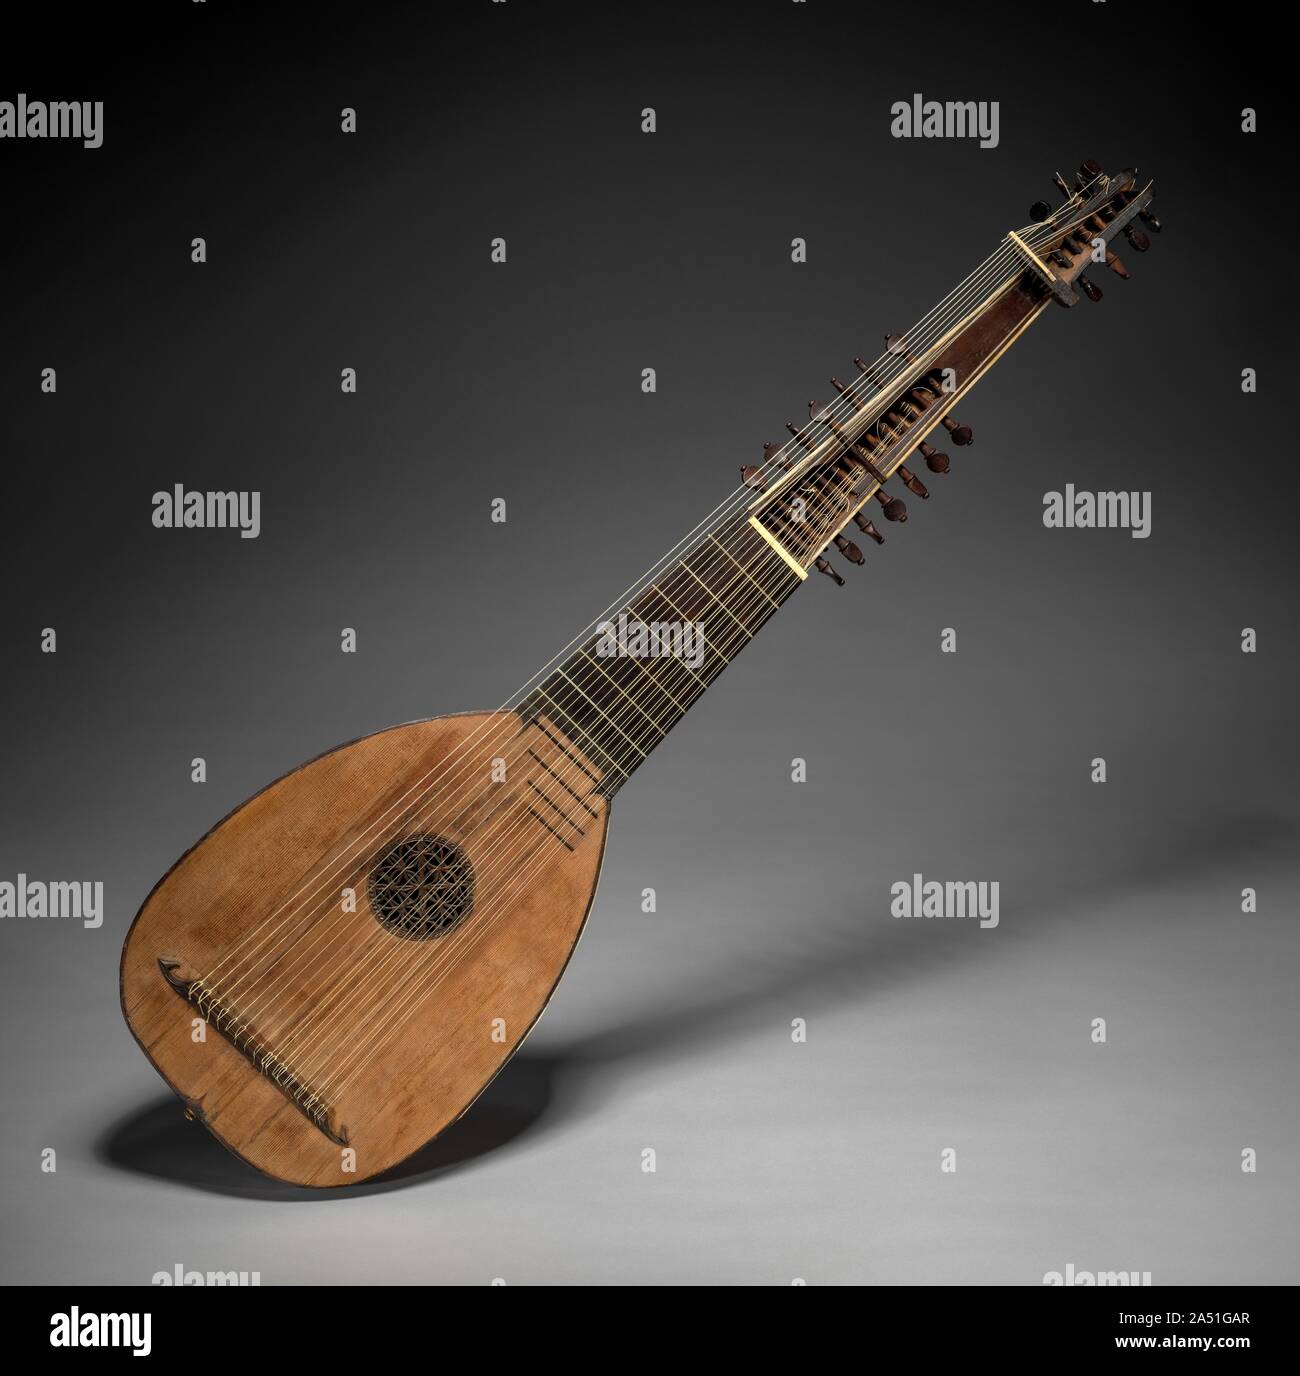 Laúd o Tiorbino, c. 1620. El laúd es el instrumento musical más importante  en un ambiente secular a lo largo de los siglos XVI y XVII. No sólo un  virtuoso del instrumento